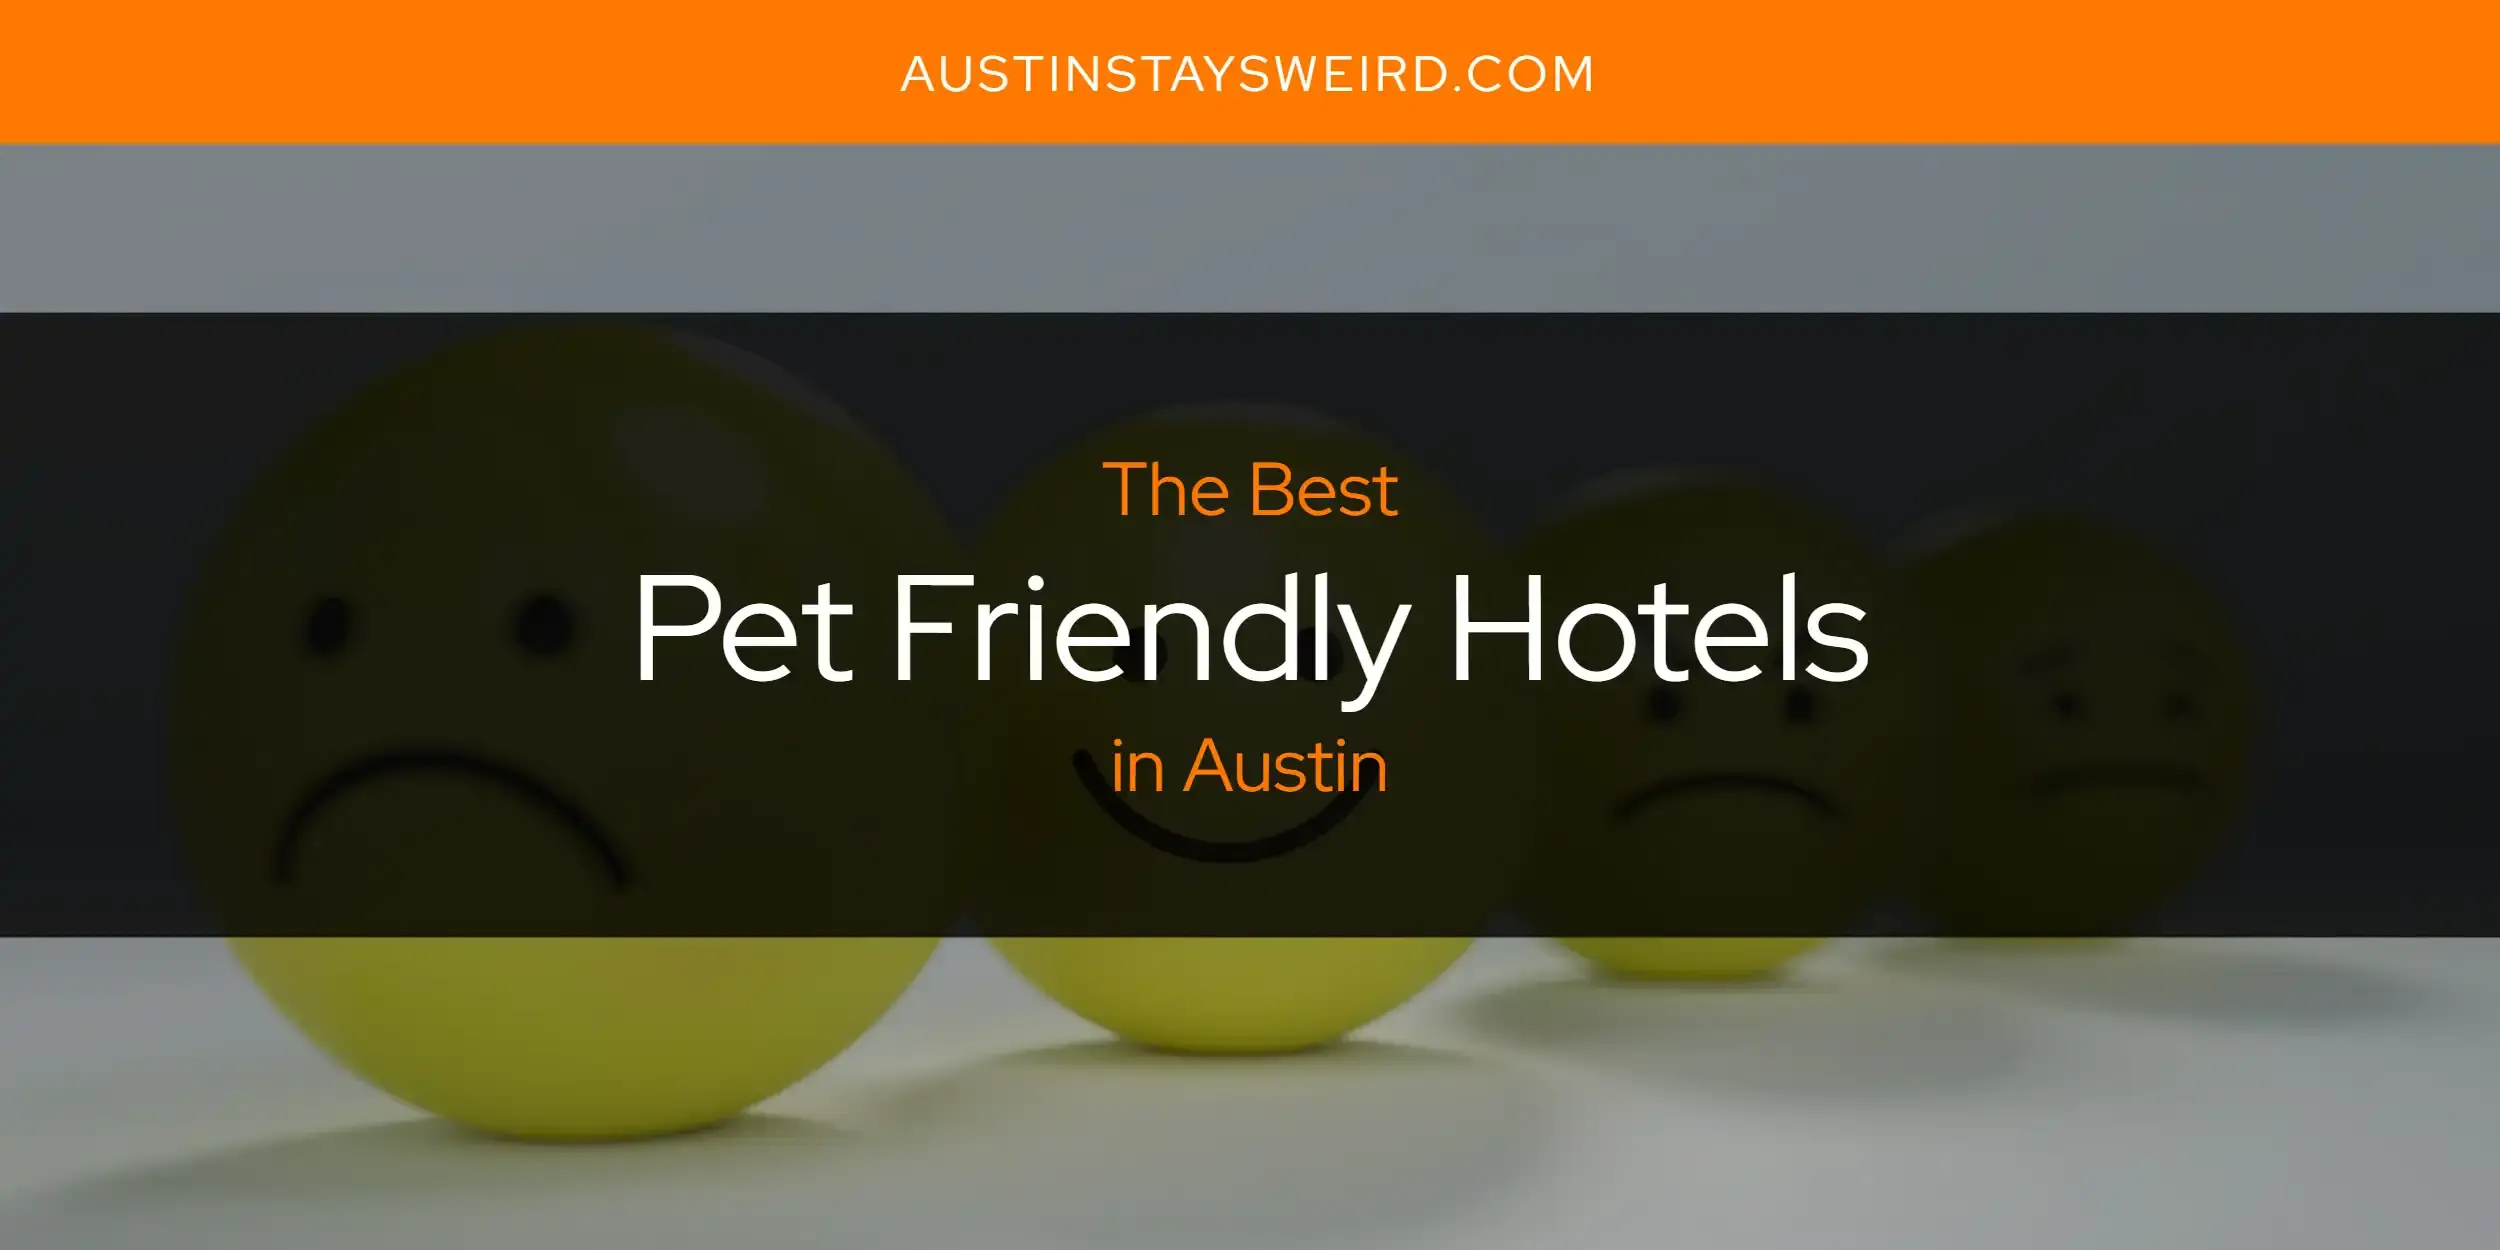 Best Pet-Friendly Hotels - Pet-Friendly Hotels Across the U.S.